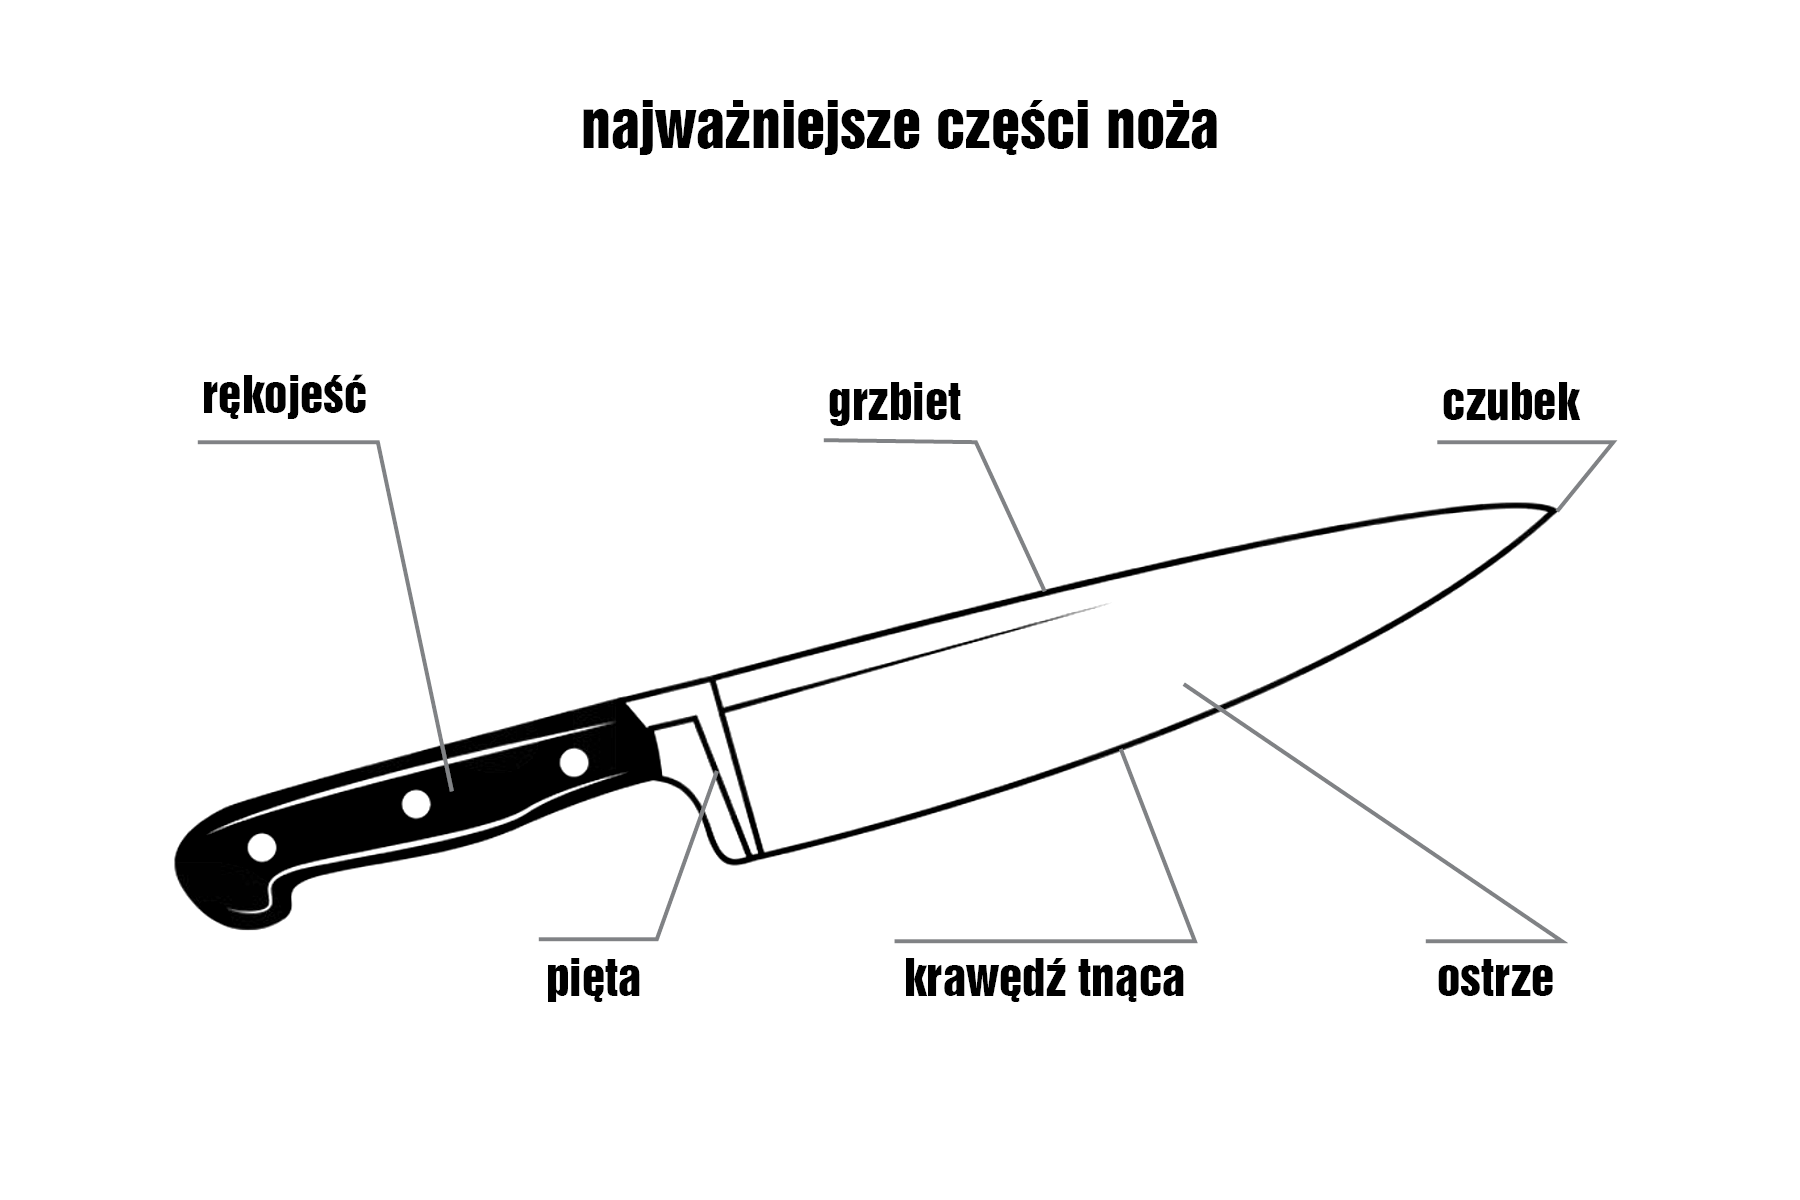 Виды кухонных ножей и их назначение - как выбрать модель для профессиональной нарезки